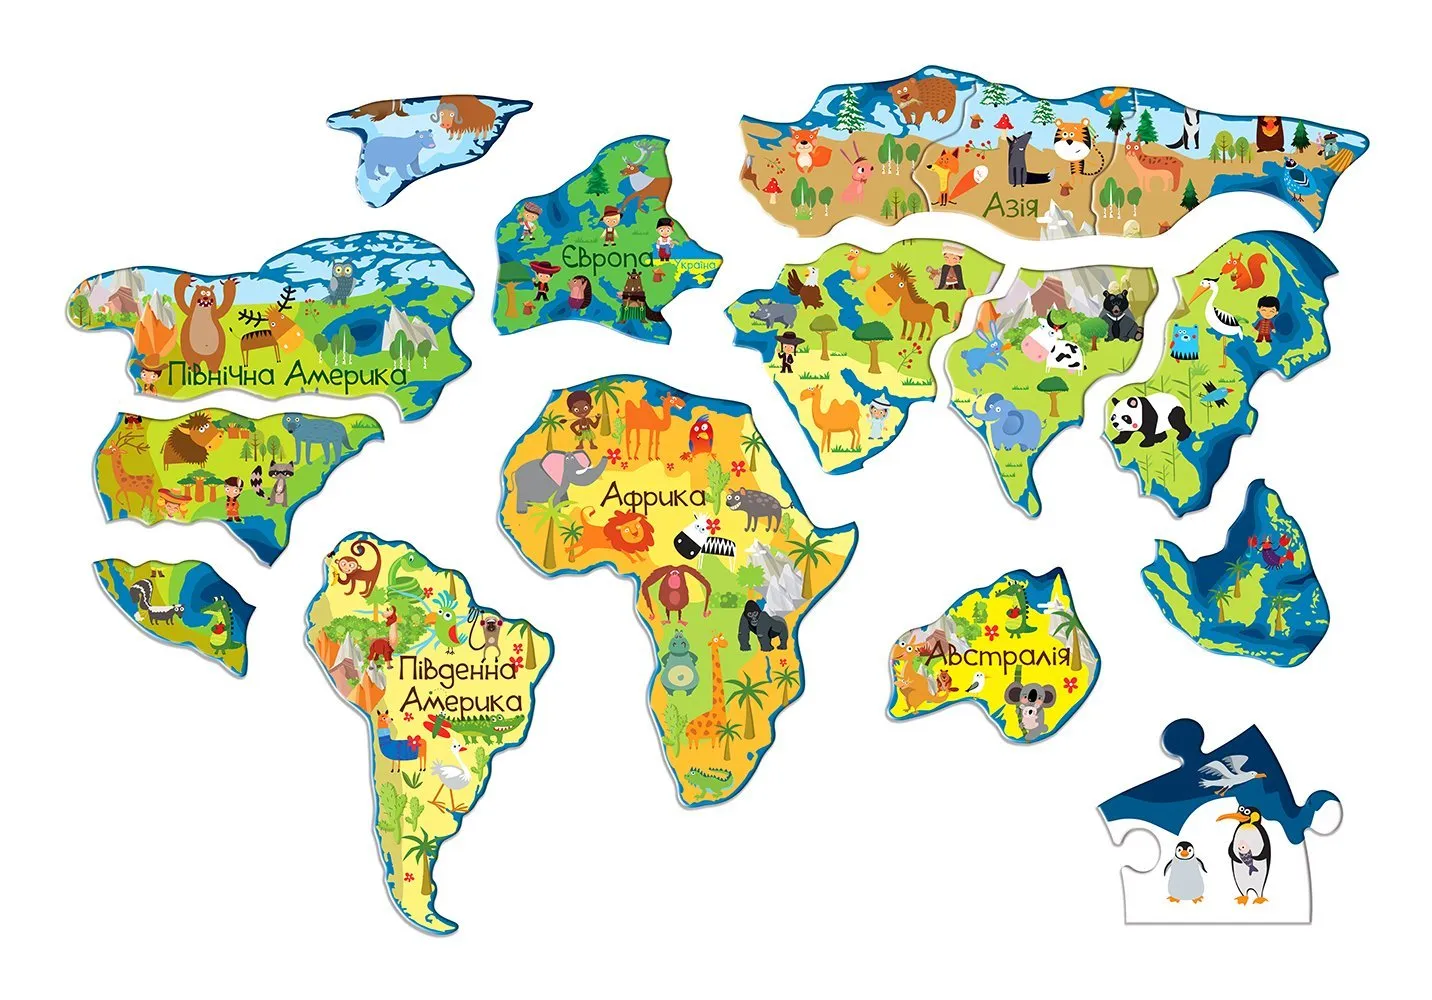 Континенты для дошкольников. Материки для дошкольников. Изображения материков для детей. Материки земли для дошкольников. Карта материков на глобусе